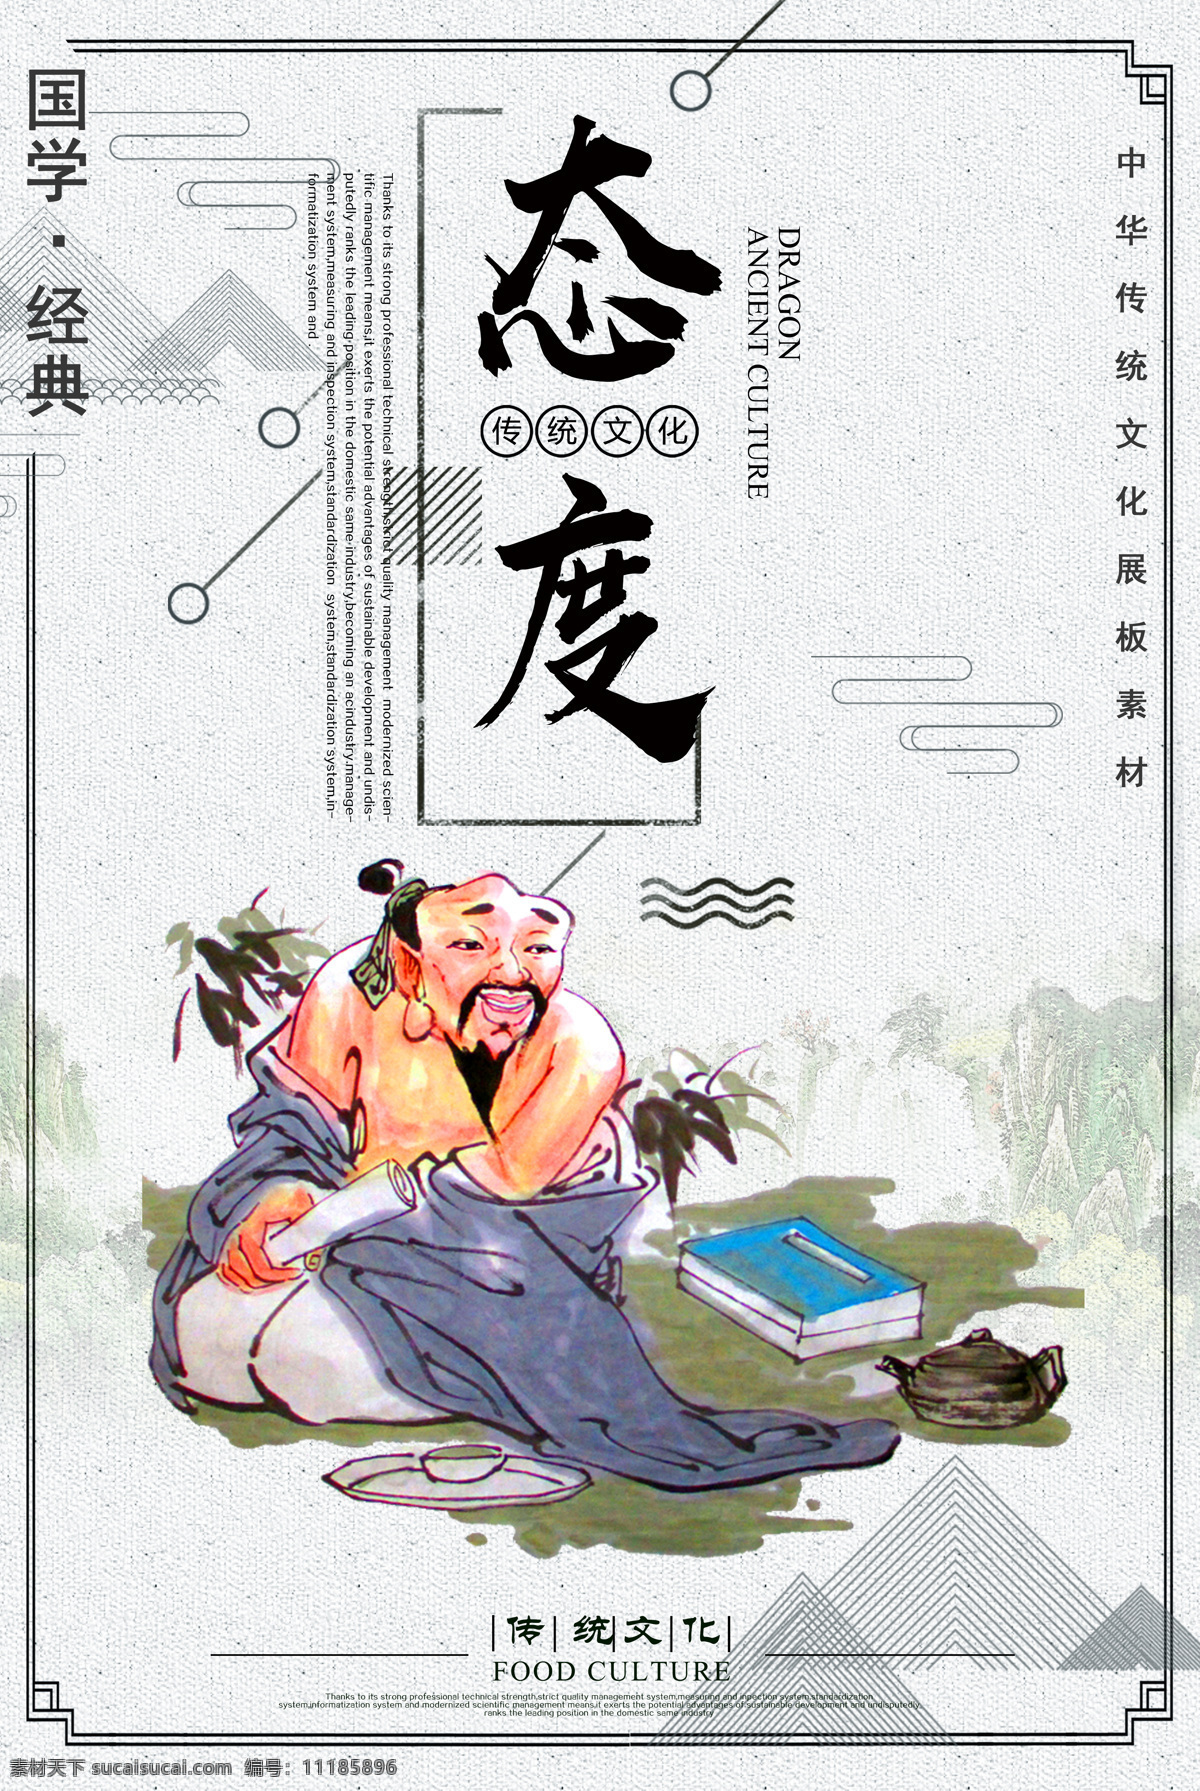 国学 经典 传统文化 海报 素材图片 国学经典 传统 文化